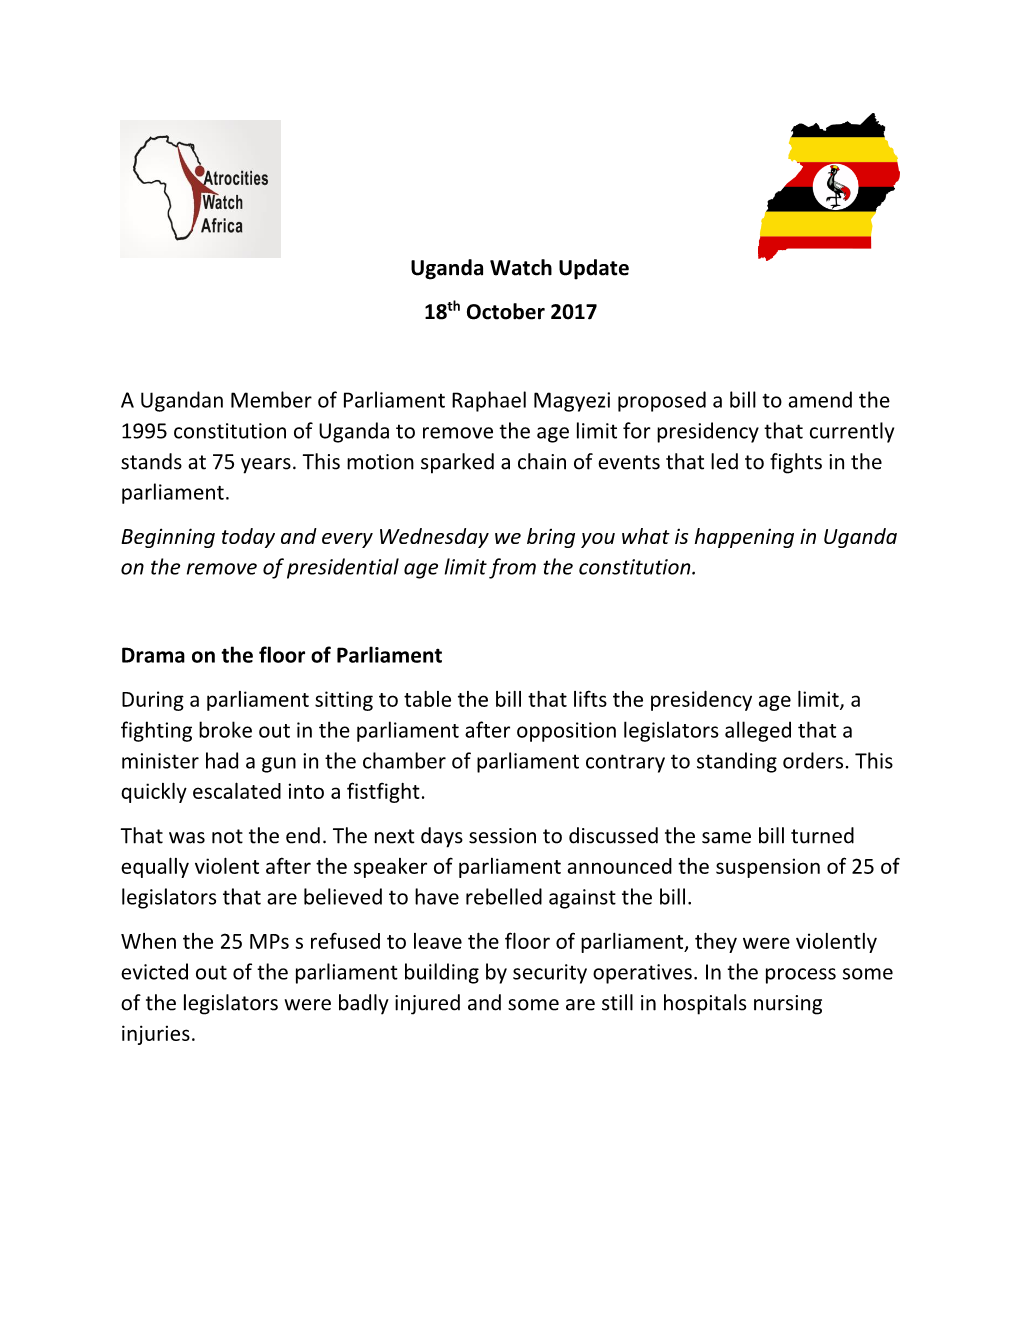 Uganda Watch Update 18Th October 2017 a Ugandan Member Of